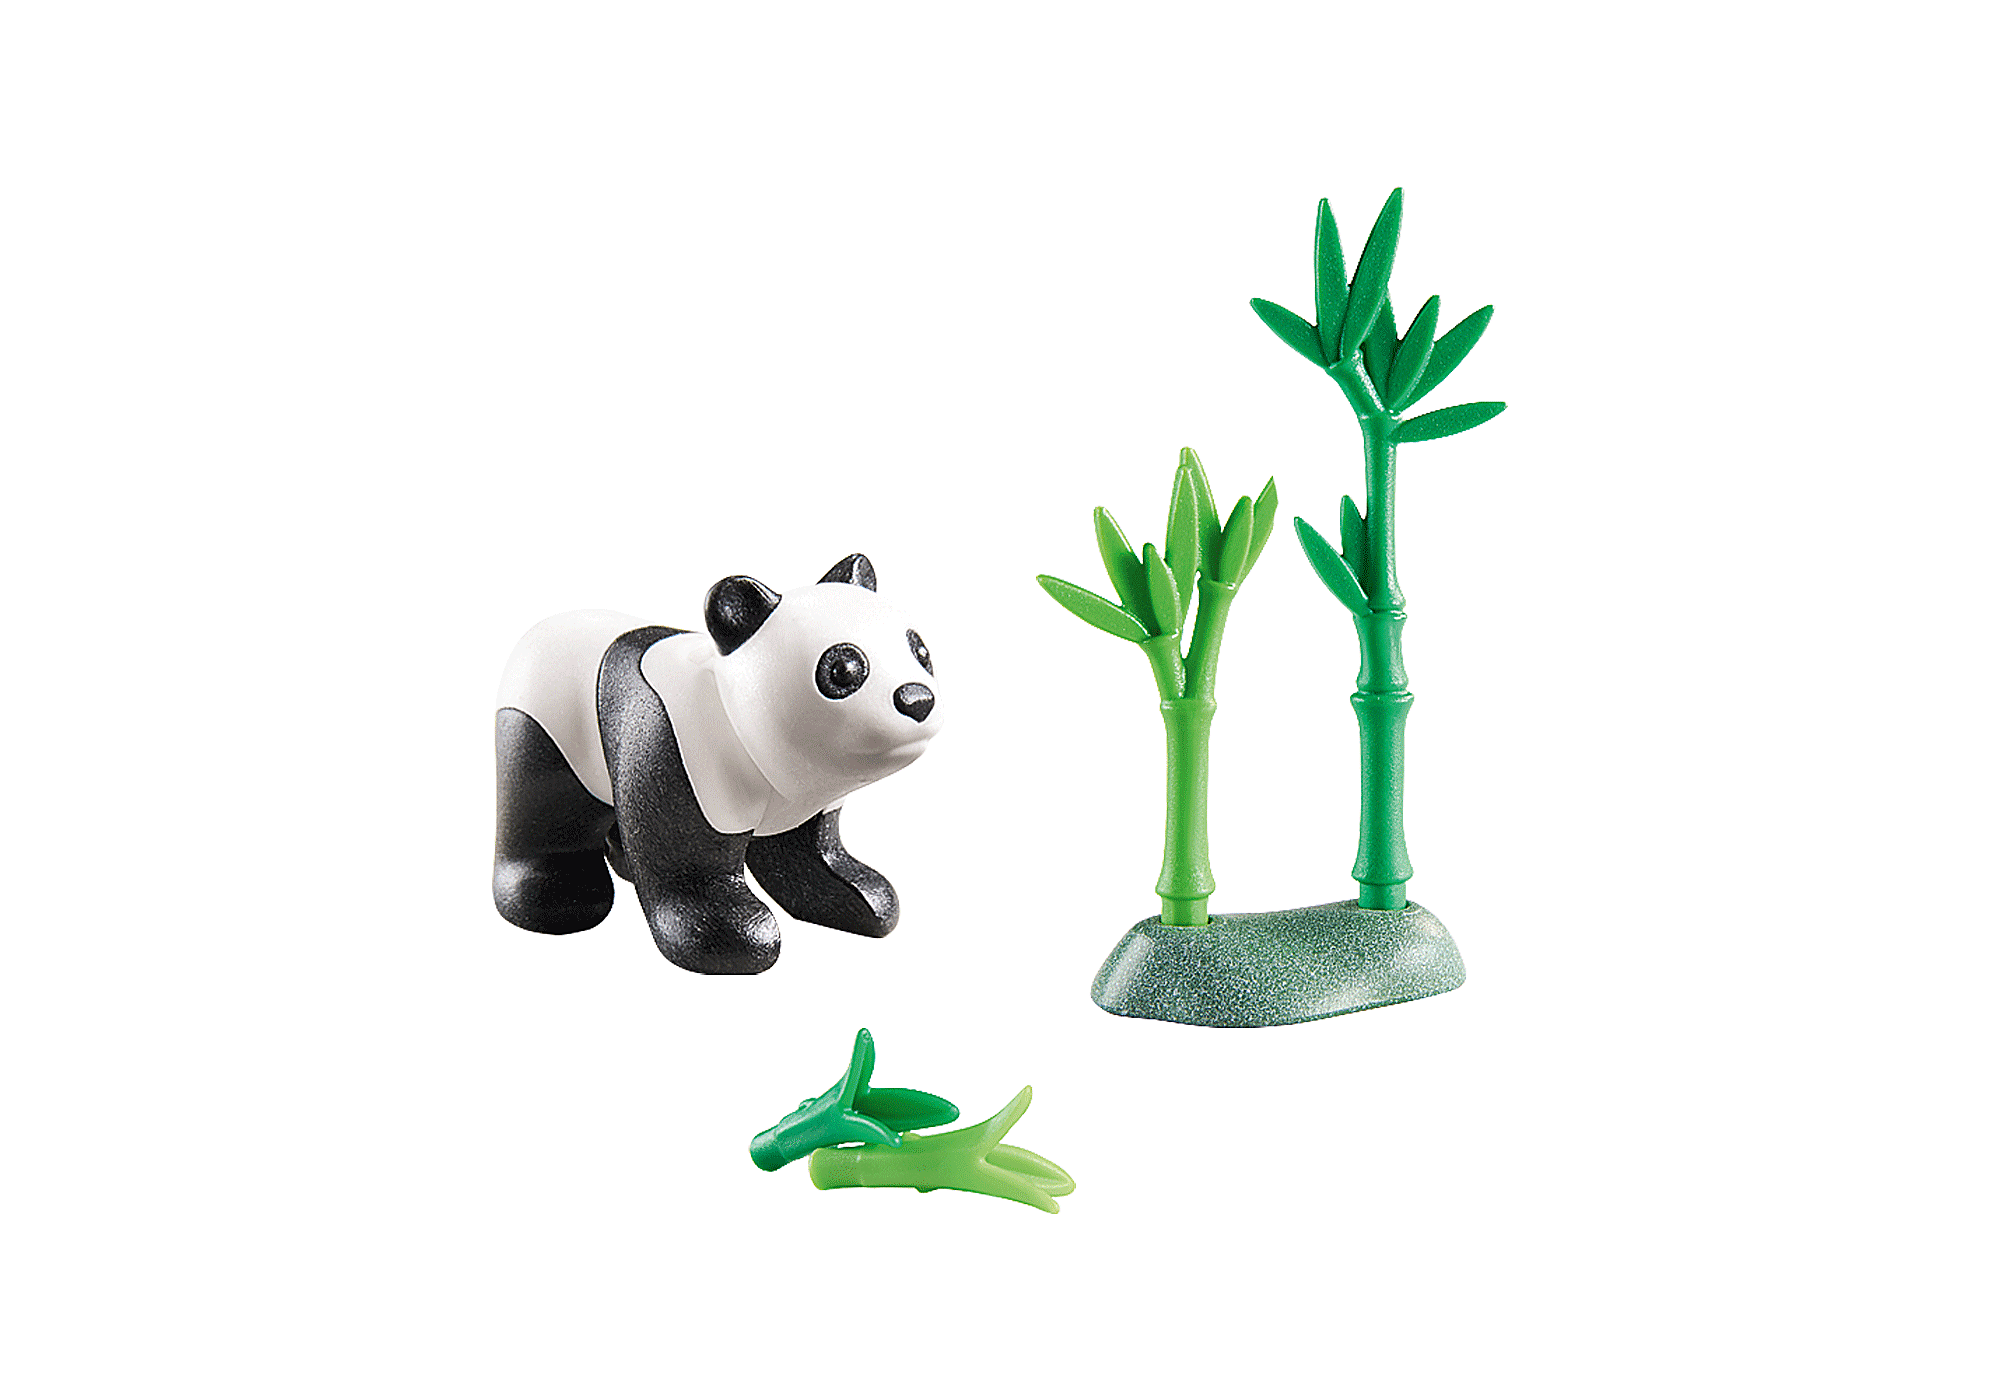 Playmobil inspira nova série de animação no Canal Panda - Kids